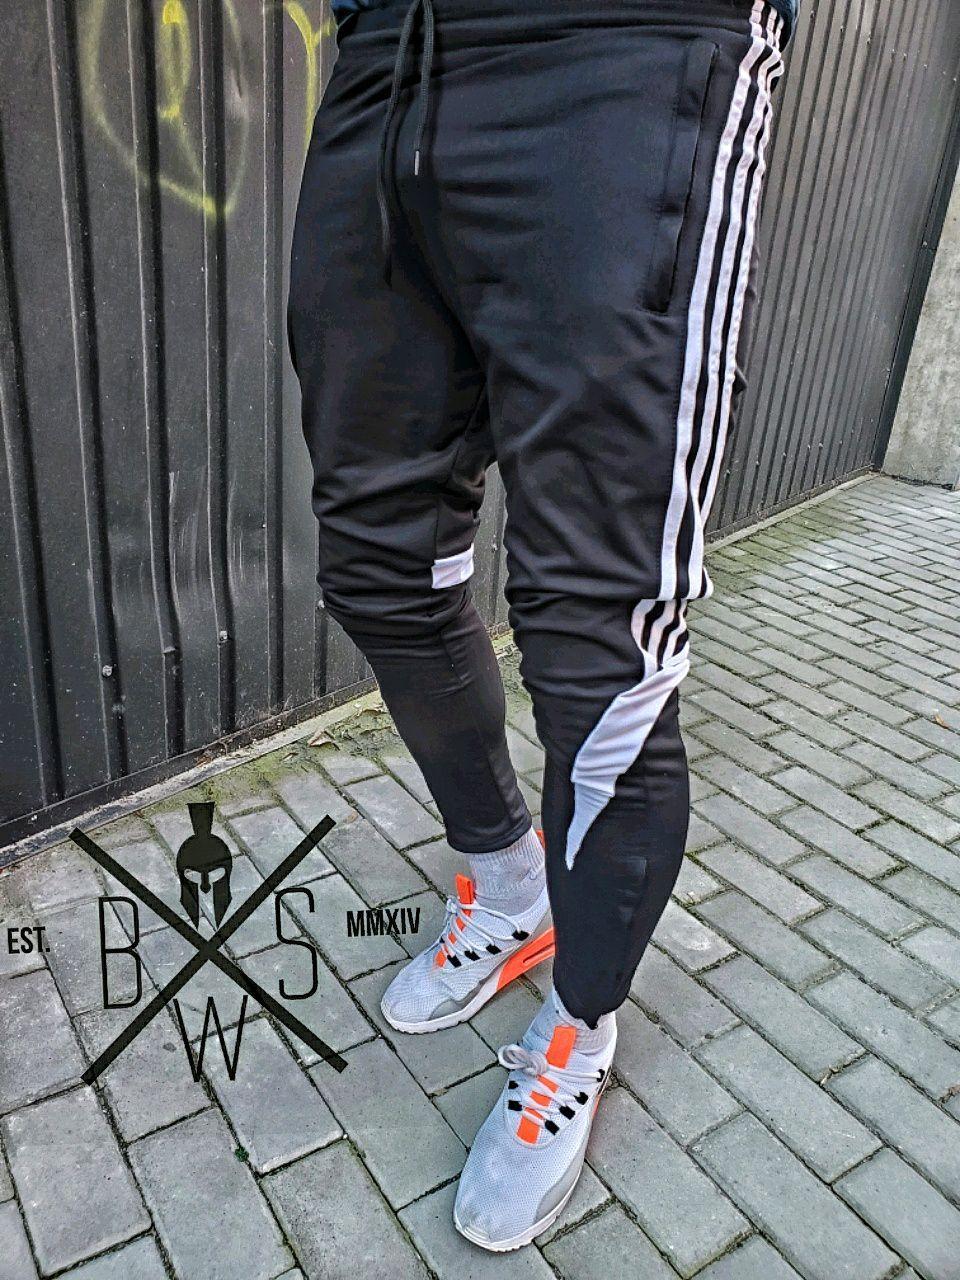 Спортивные штаны Adidas x black-white мужские с лампасами весенние / л: 549  грн. - Спортивные штаны Киев на BESPLATKA.ua 82035209